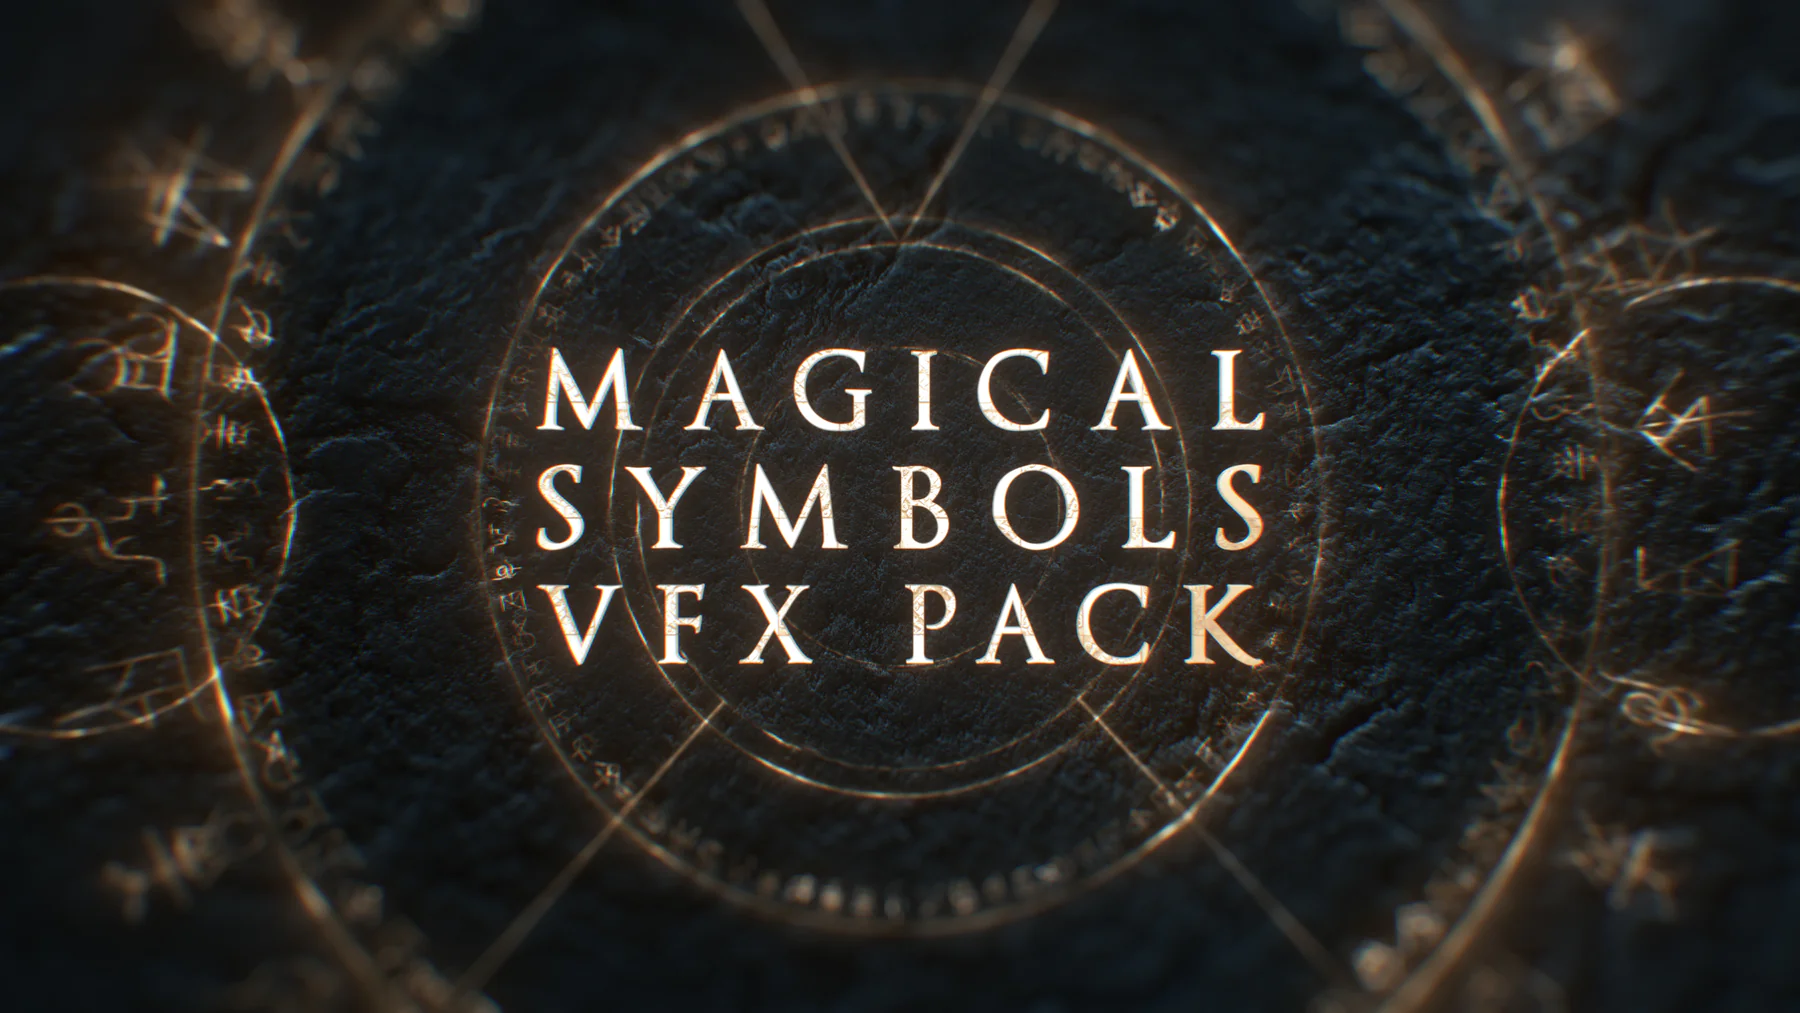 80个奇异博士魔法盾火花神秘符文特效素材 Triune Digital – Magical Symbols VFX Pack-后期素材库